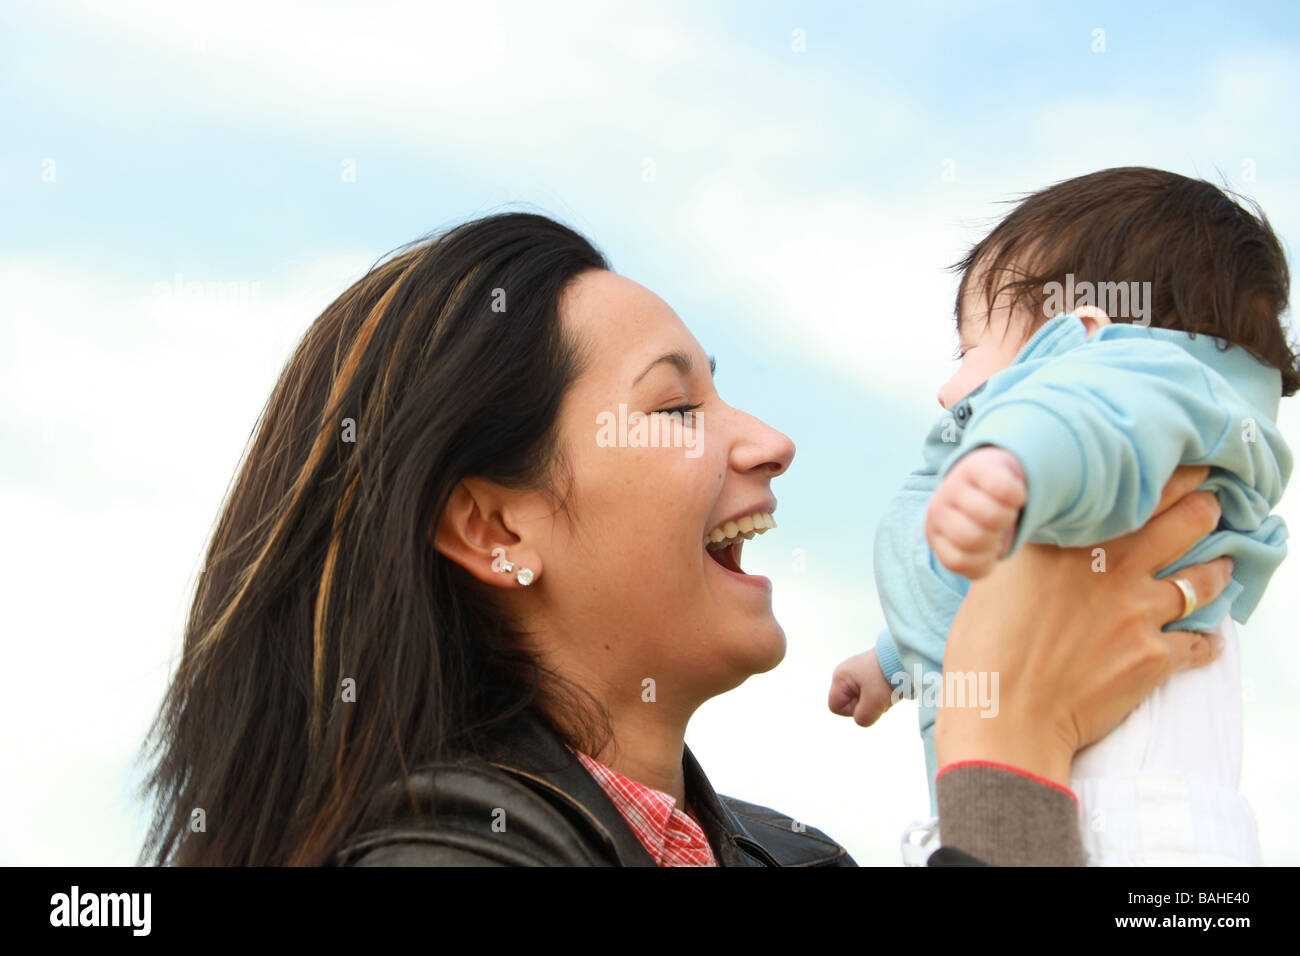 Une jeune mère de 22 ans heureux avec son fils âgé de 4 mois Banque D'Images